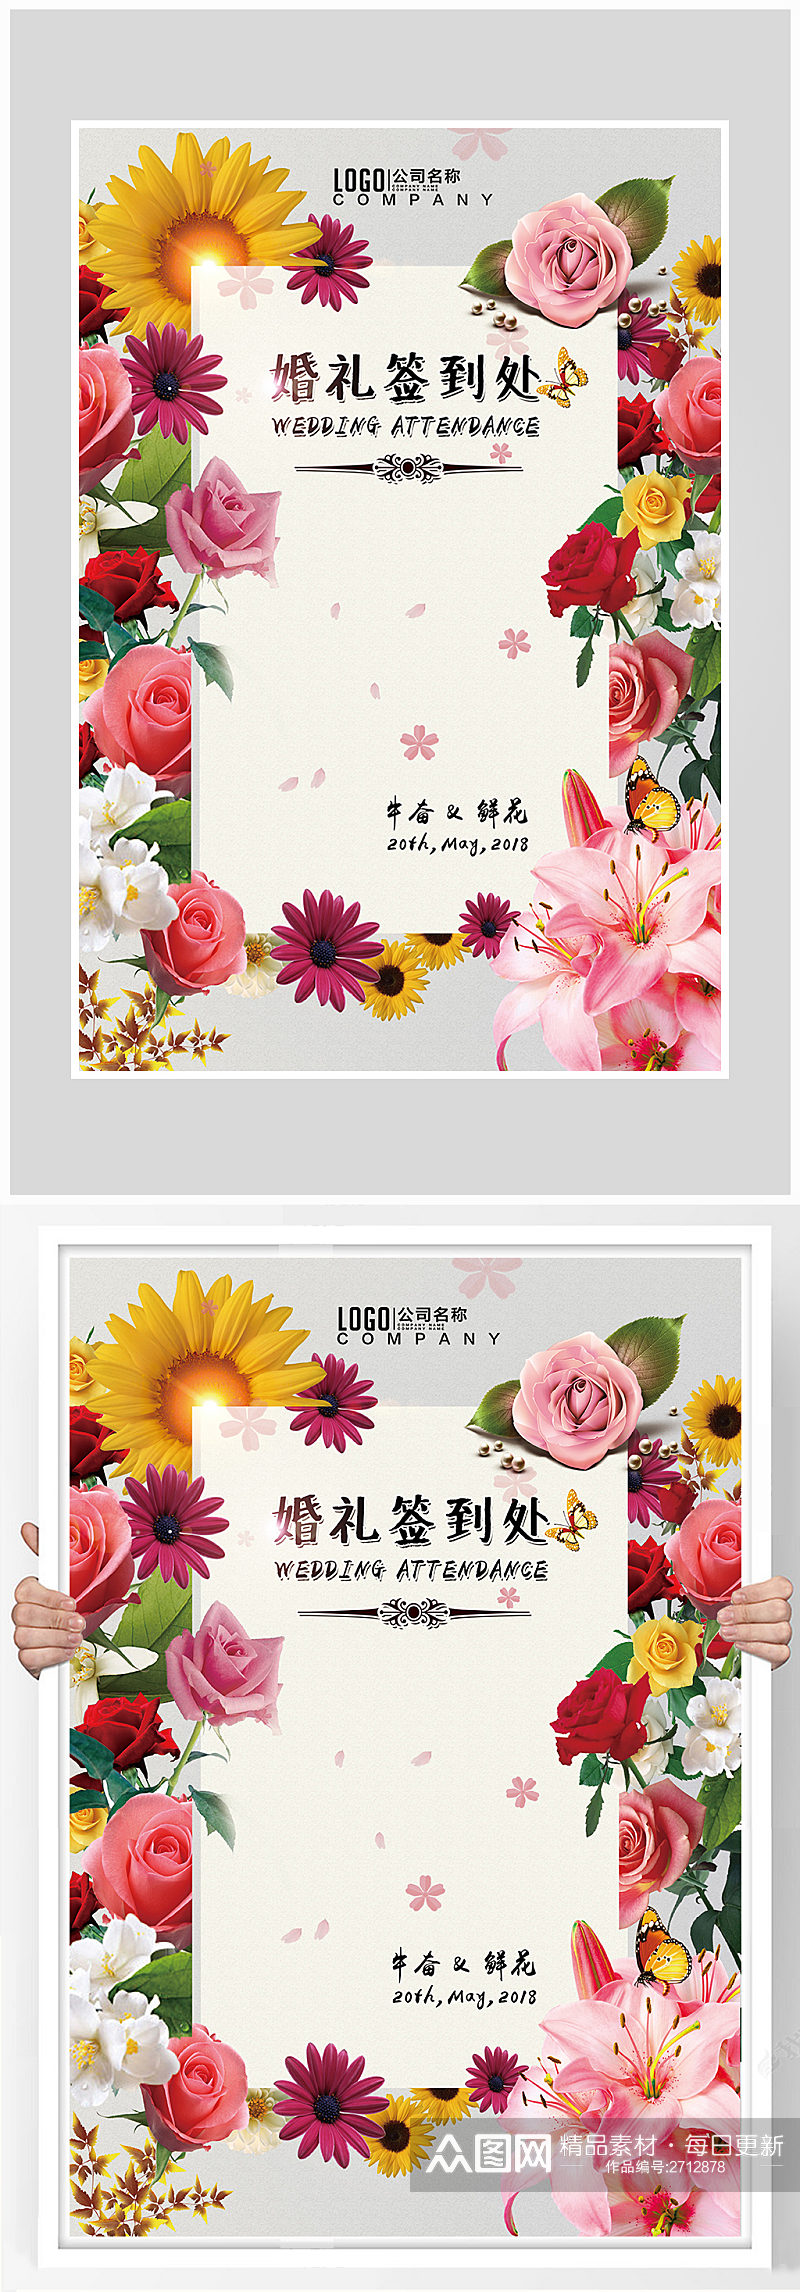 唯美花卉婚礼签到处海报设计素材